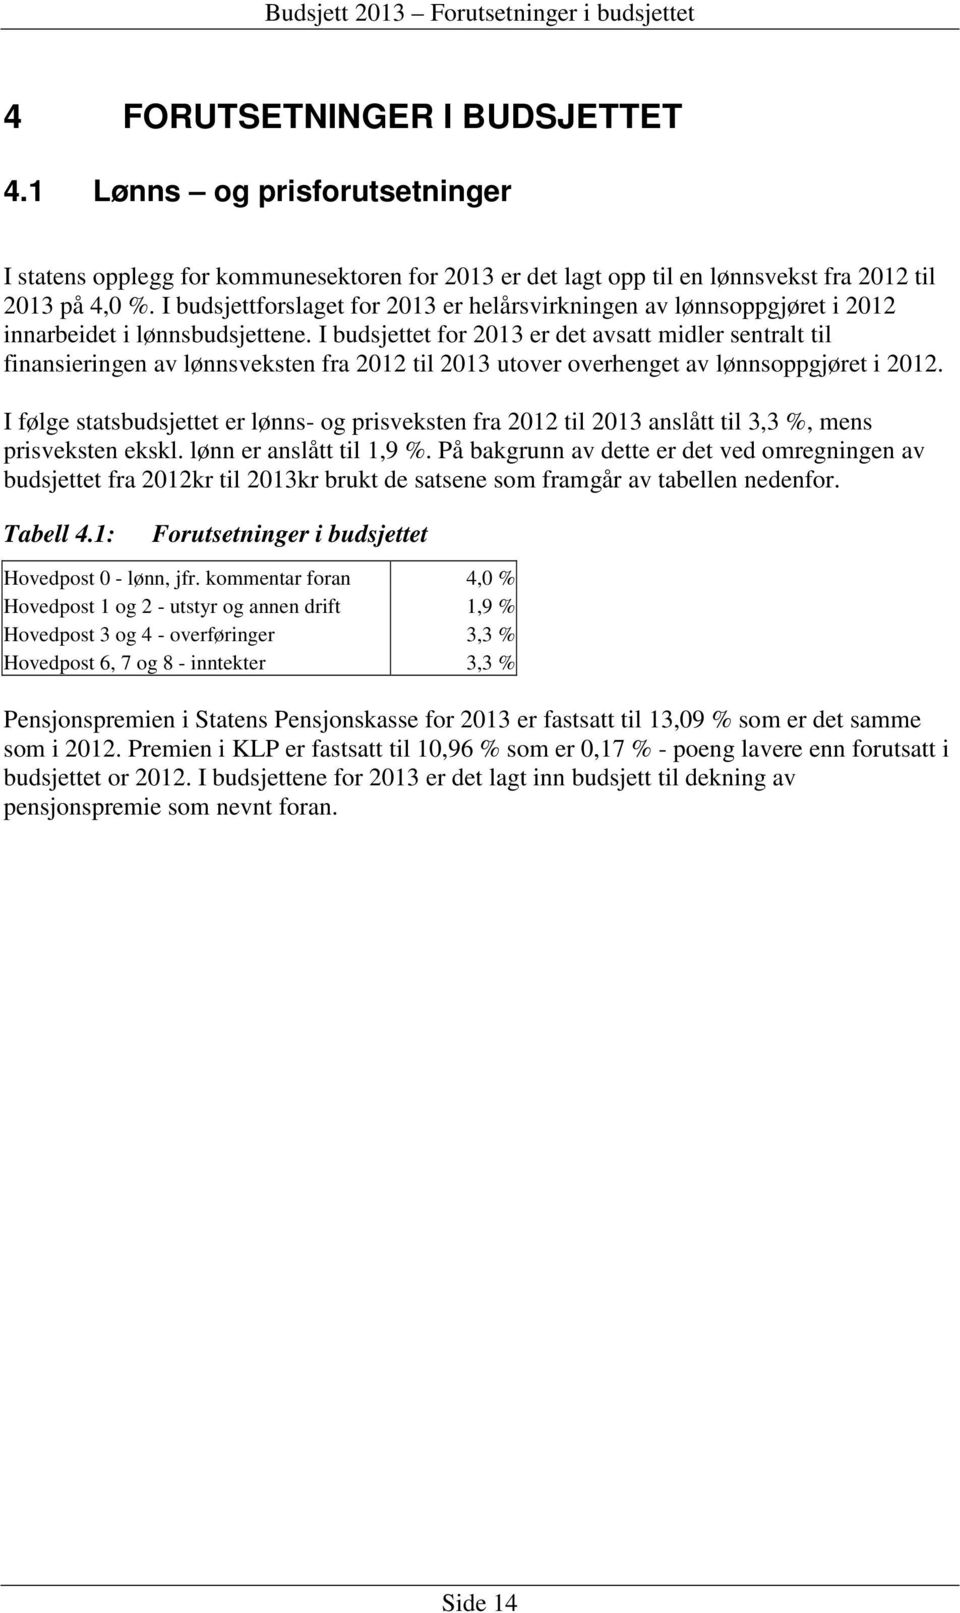 I budsjettforslaget for 2013 er helårsvirkningen av lønnsoppgjøret i 2012 innarbeidet i lønnsbudsjettene.